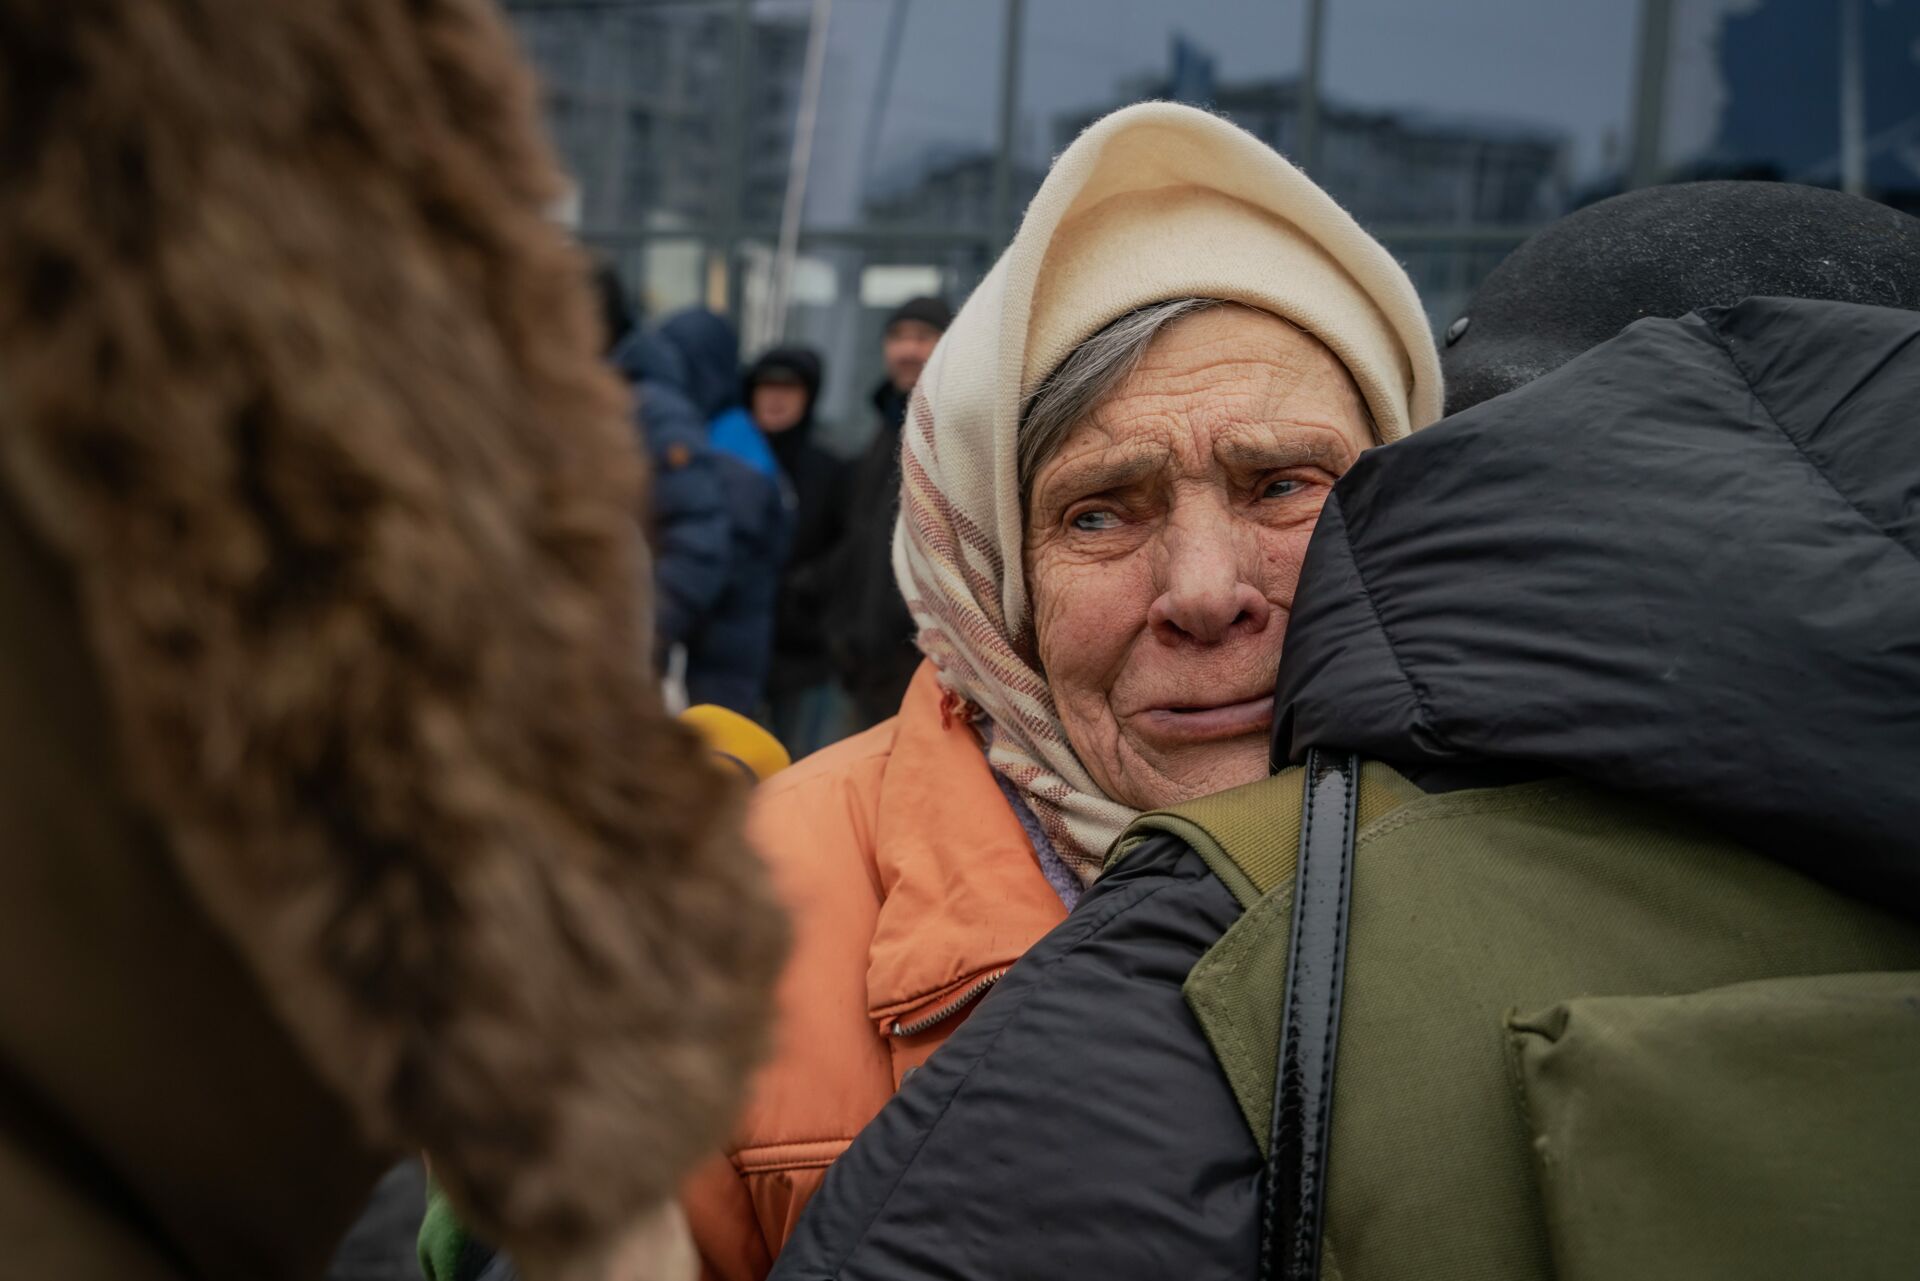 Po raz pierwszy od miesiąca starsza kobieta przyjmuje gości w Buczy. Płacze, przytula wolontariuszy i opowiada o okropnościach, których była świadkiem podczas okupacji.